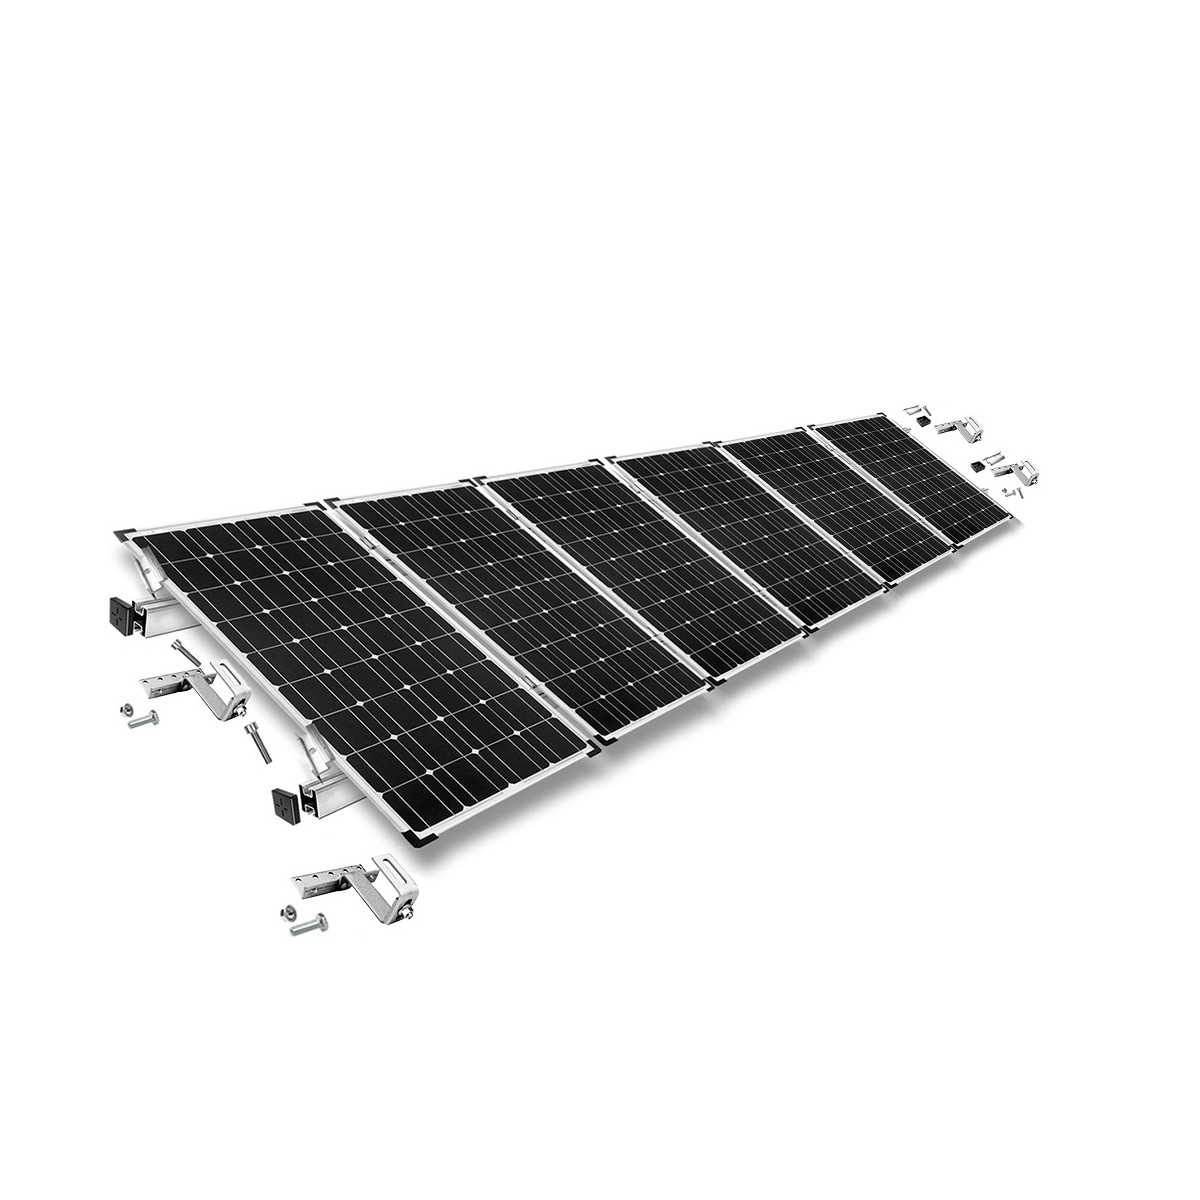 Kit di montaggio h30 regolabile con staffe per tetto (per tegole) per tetto inclinato 6 pannelli solari frame 30 mm